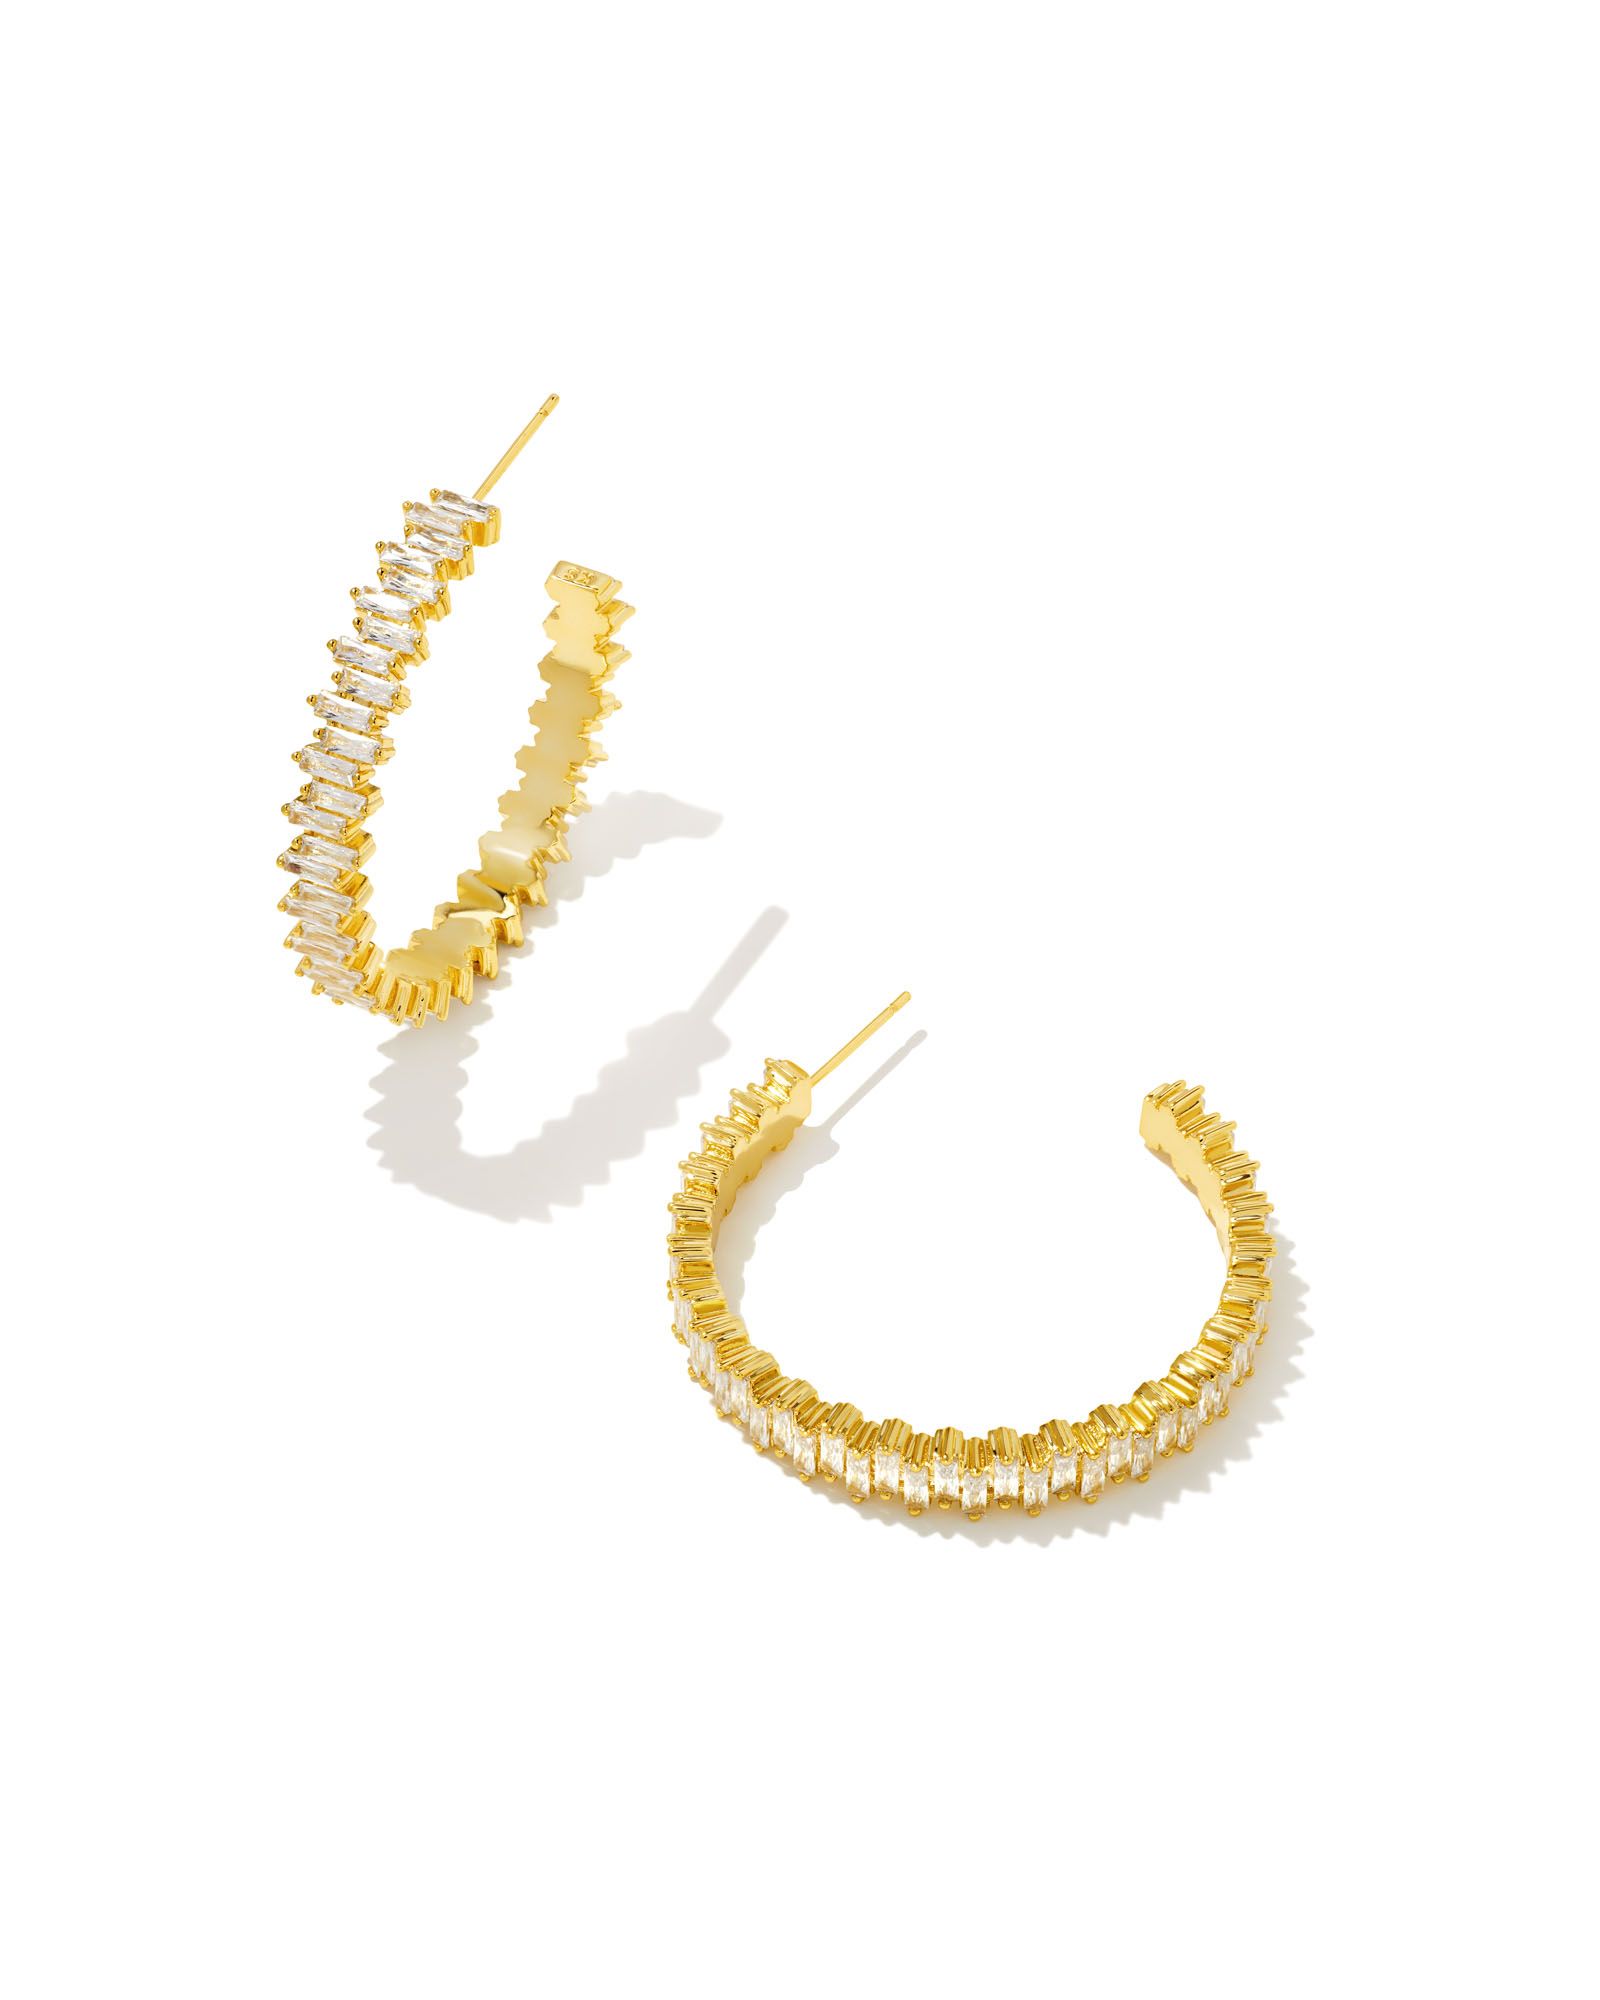 Juliette Gold Hoop Earrings in White Crystal | Kendra Scott